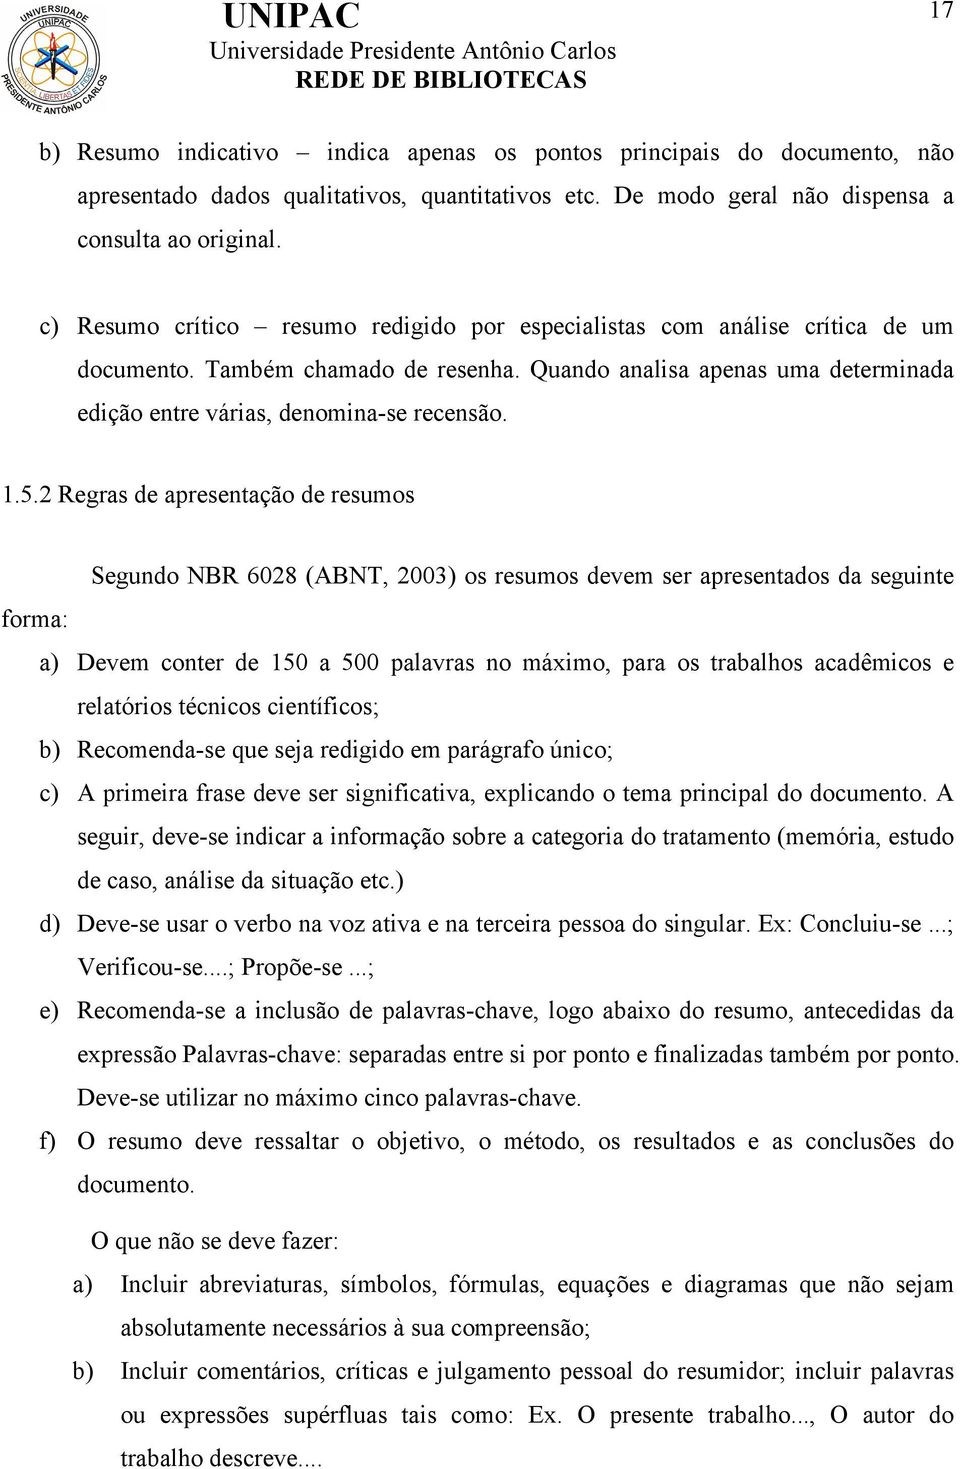 5.2 Regras de apresentação de resumos Segundo NBR 6028 (ABNT, 2003) os resumos devem ser apresentados da seguinte forma: a) Devem conter de 150 a 500 palavras no máximo, para os trabalhos acadêmicos